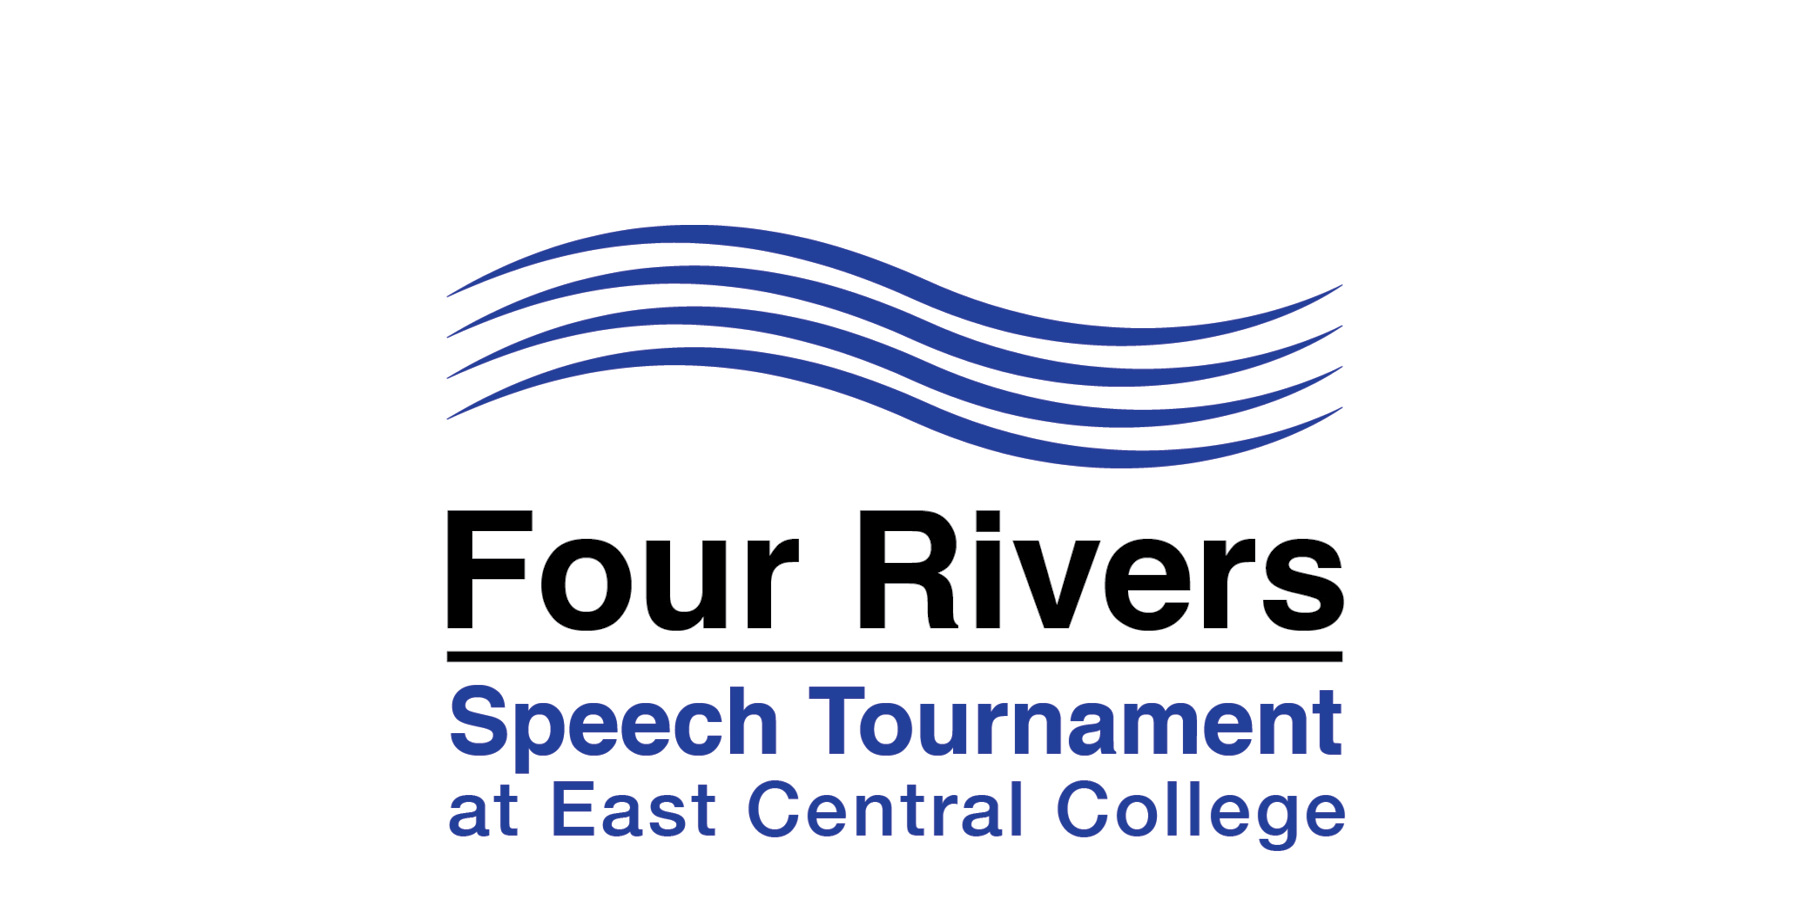 Four Rivers Speech Tournament